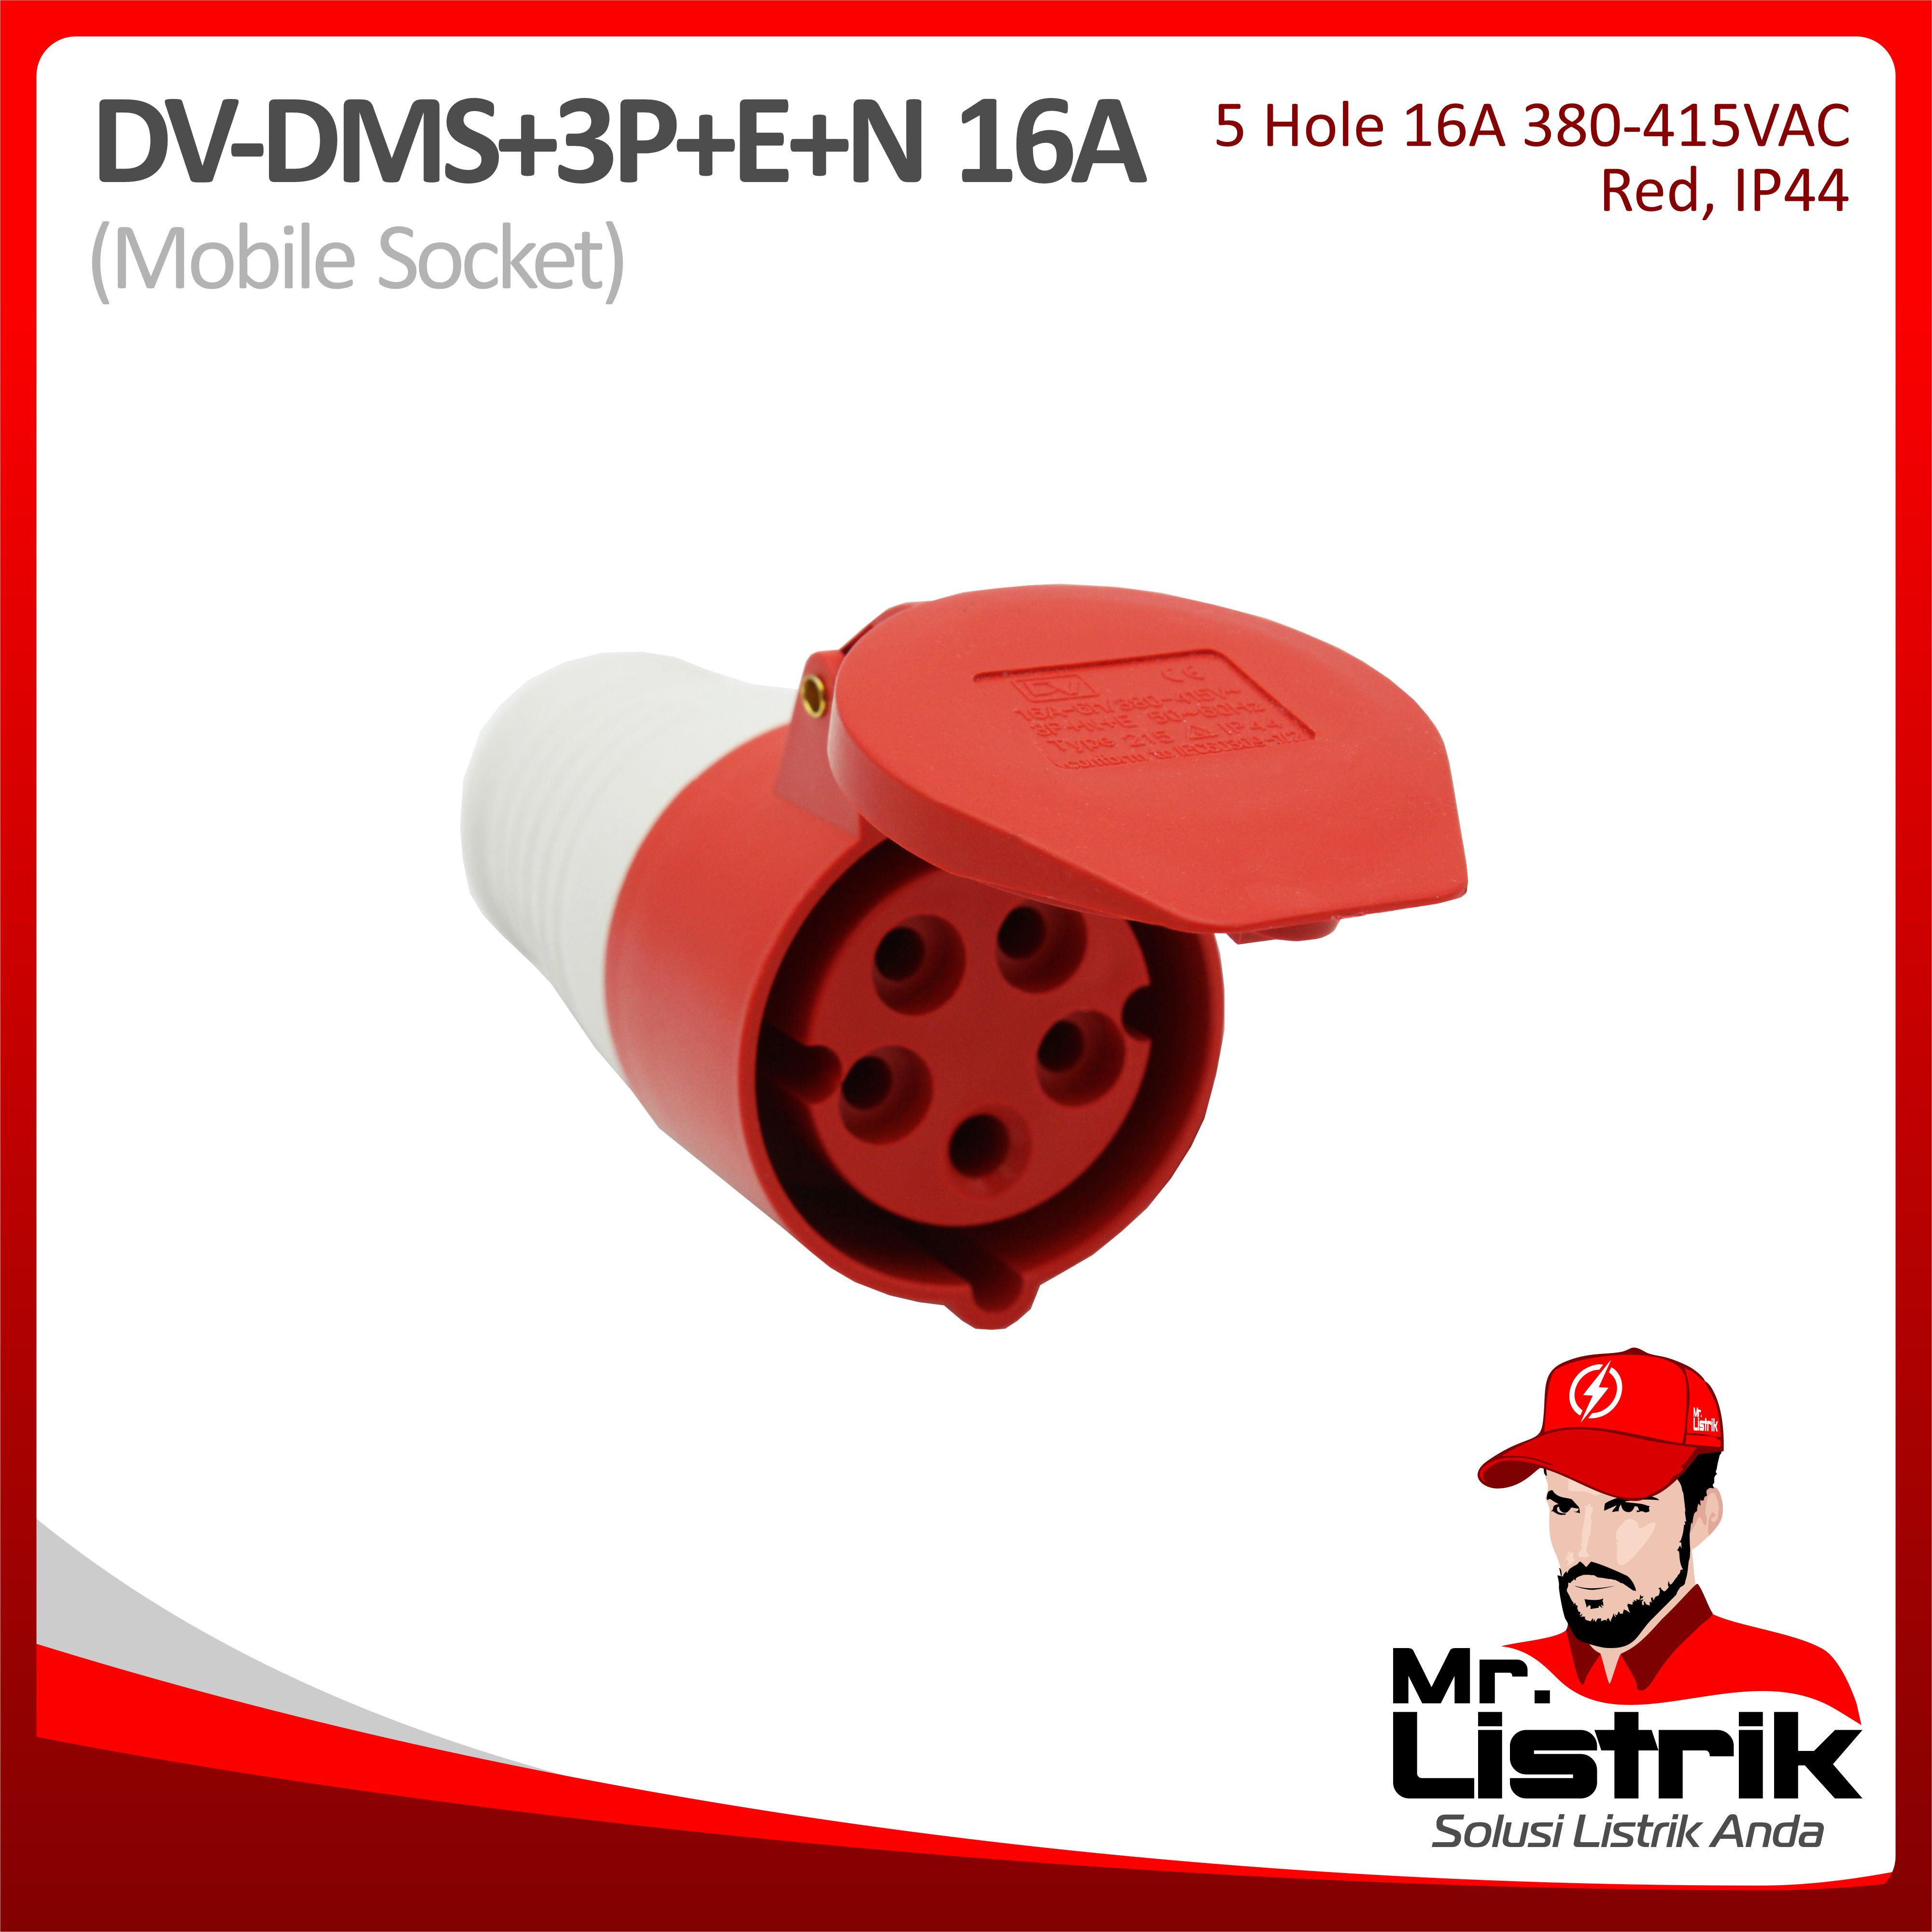 Mobile Socket 5 Pin 16A DV DMS-3P+E+N-16A